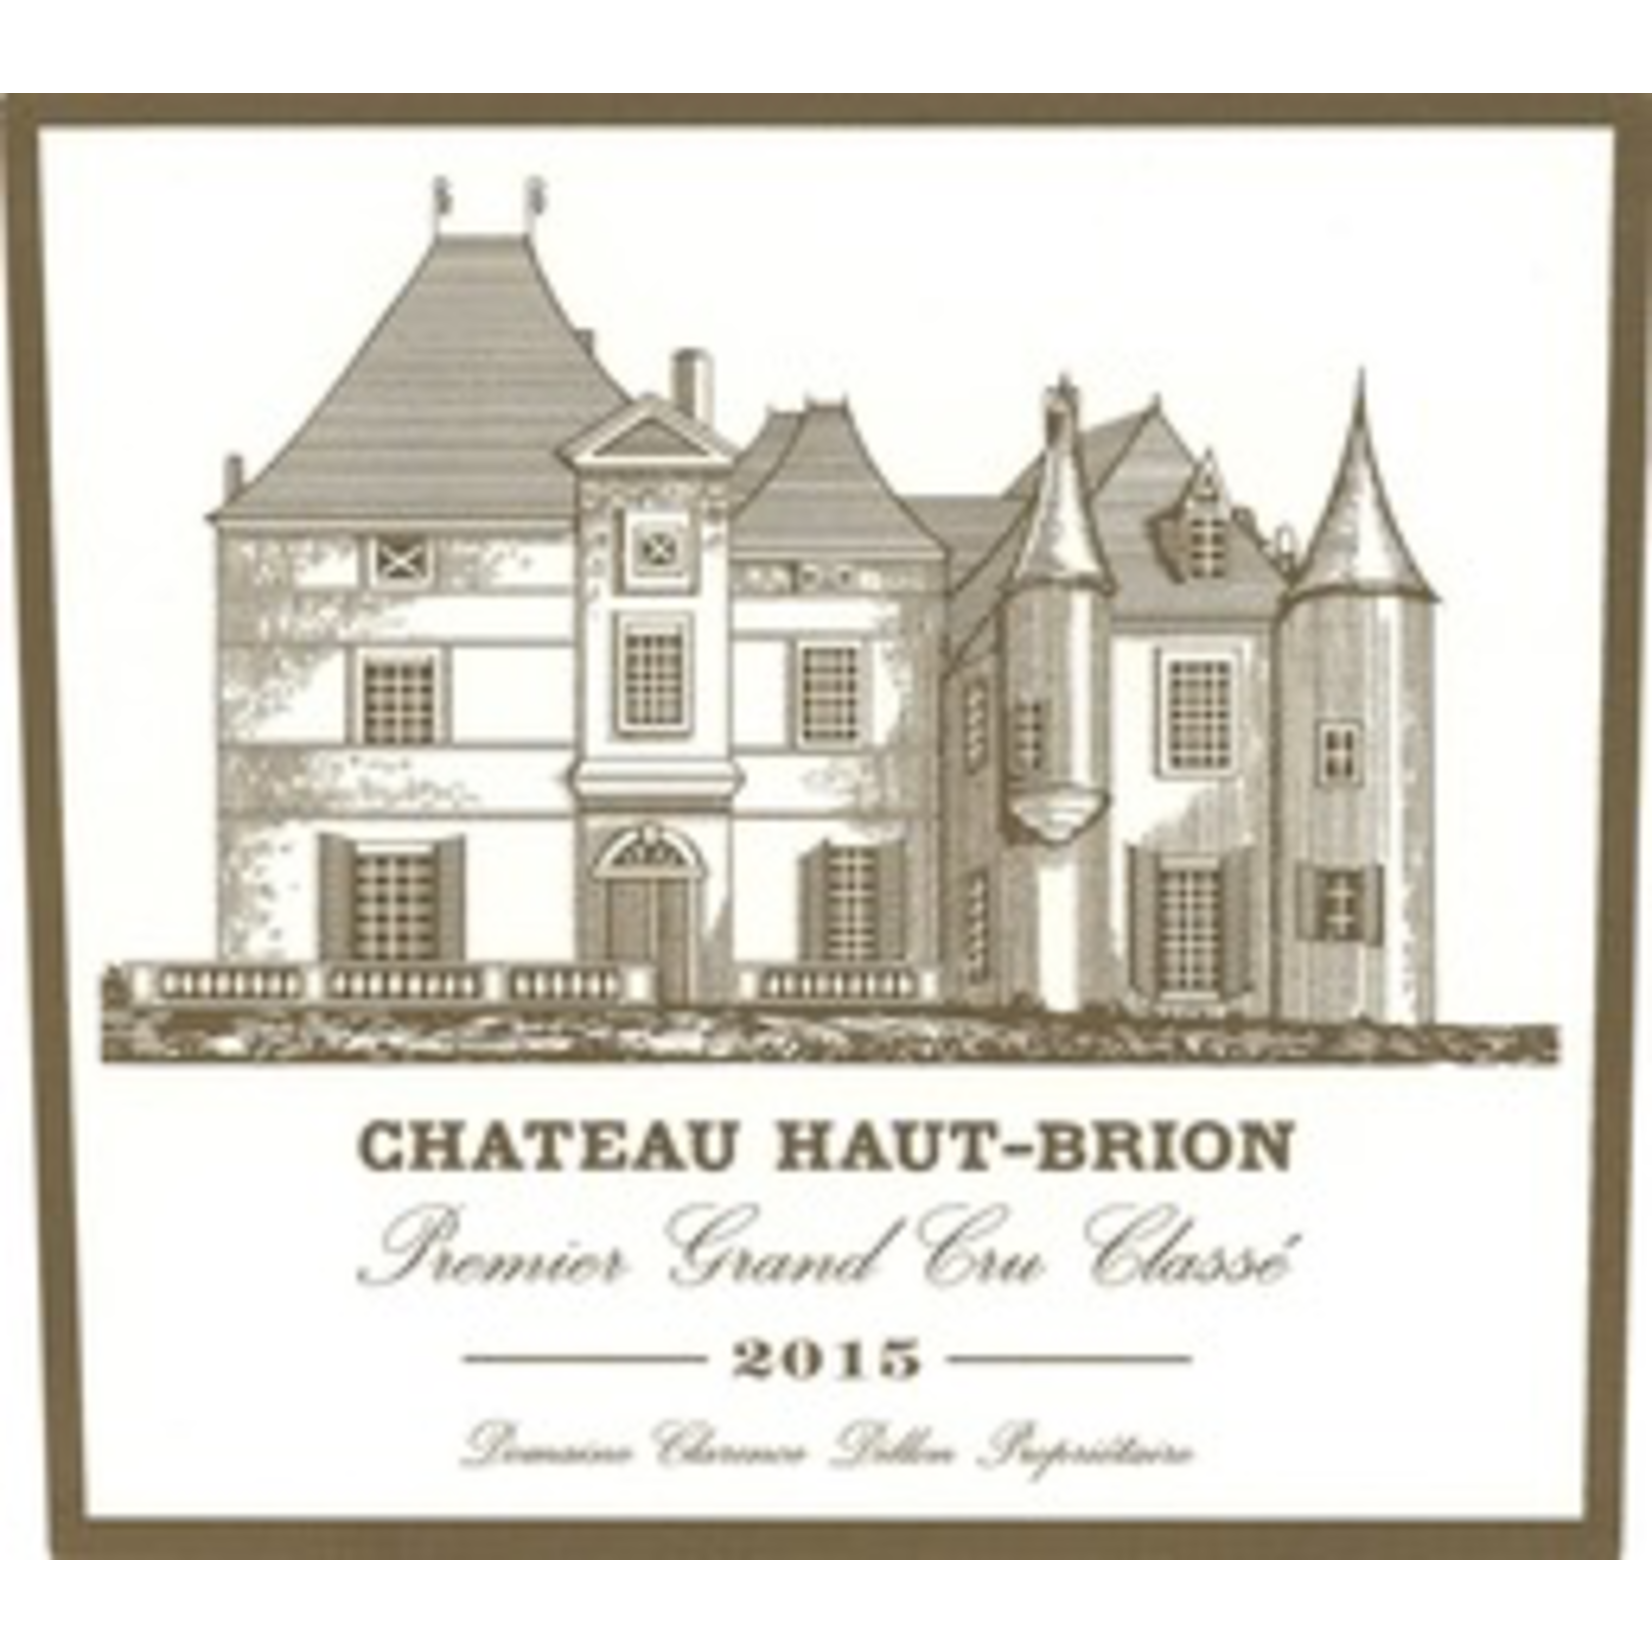 Wine Chateau Haut Brion Primer Grand Cru Classe 2015